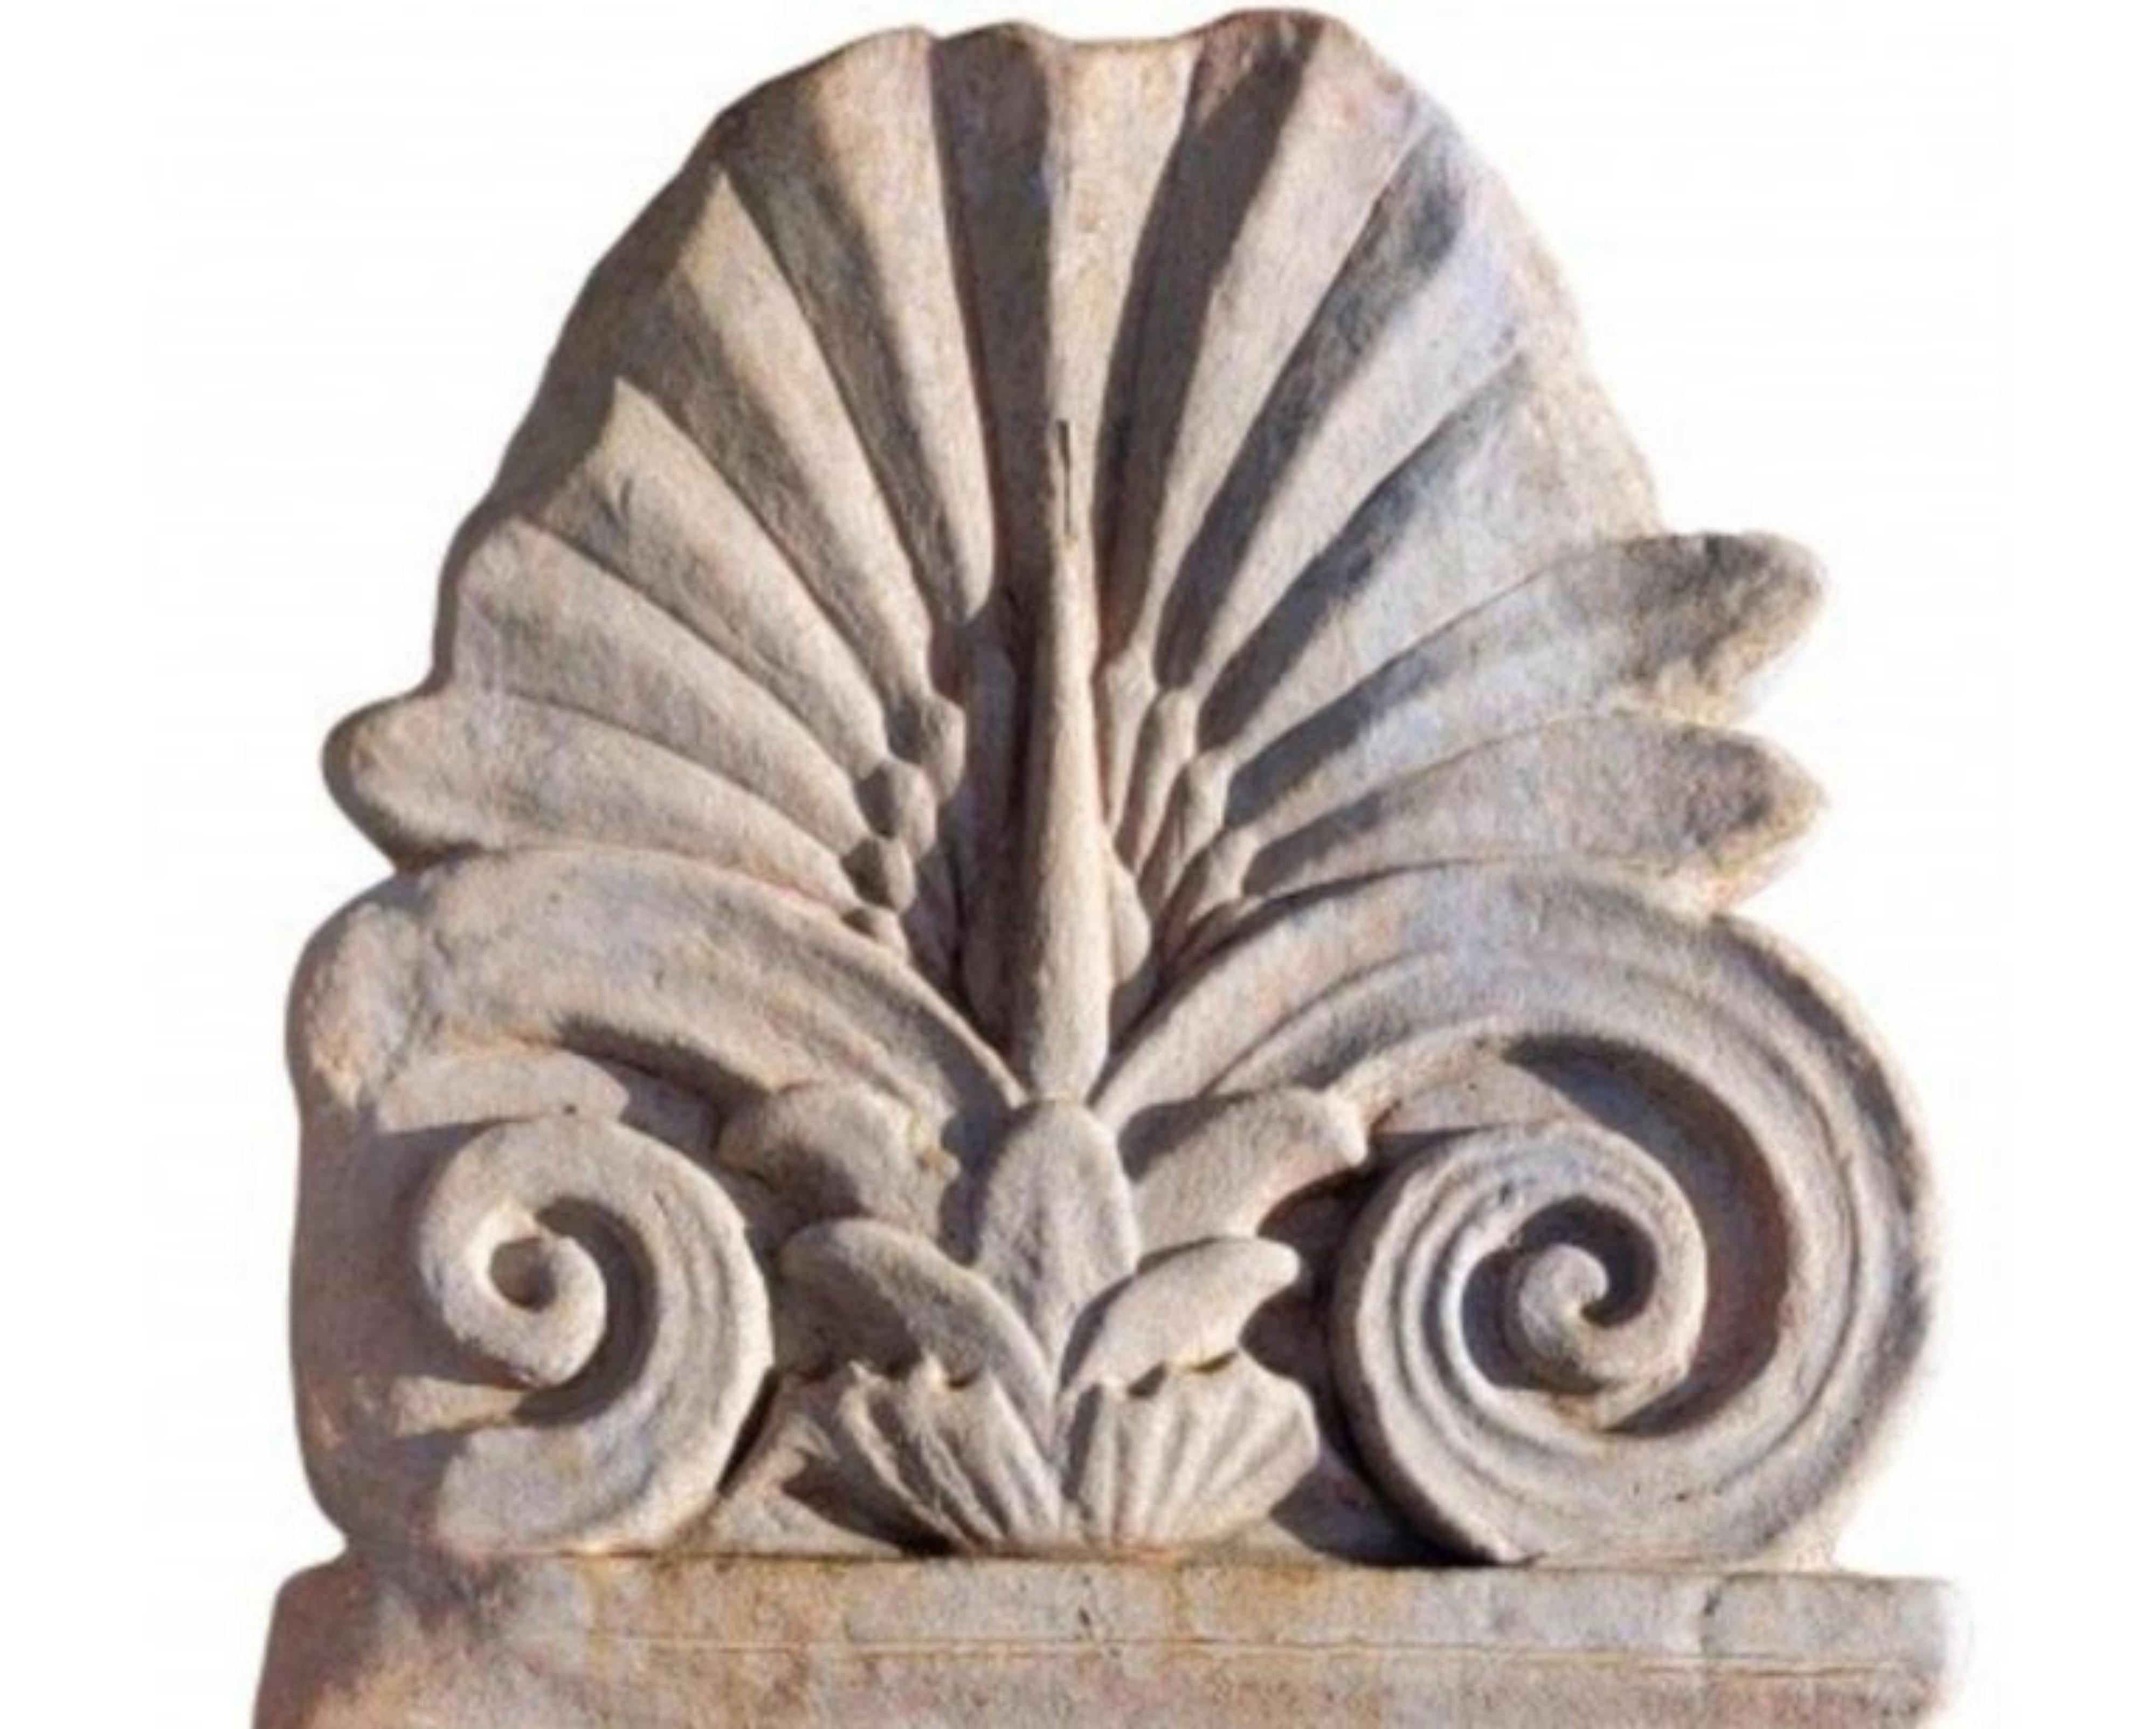 Grand antéfixe romain en terre cuite du début du 20e siècle
Italie
Mesures : hauteur 83cm
largeur 39 cm
épaisseur 4cm
poids 8kg
matériau : terre cuite
Bonnes conditions.